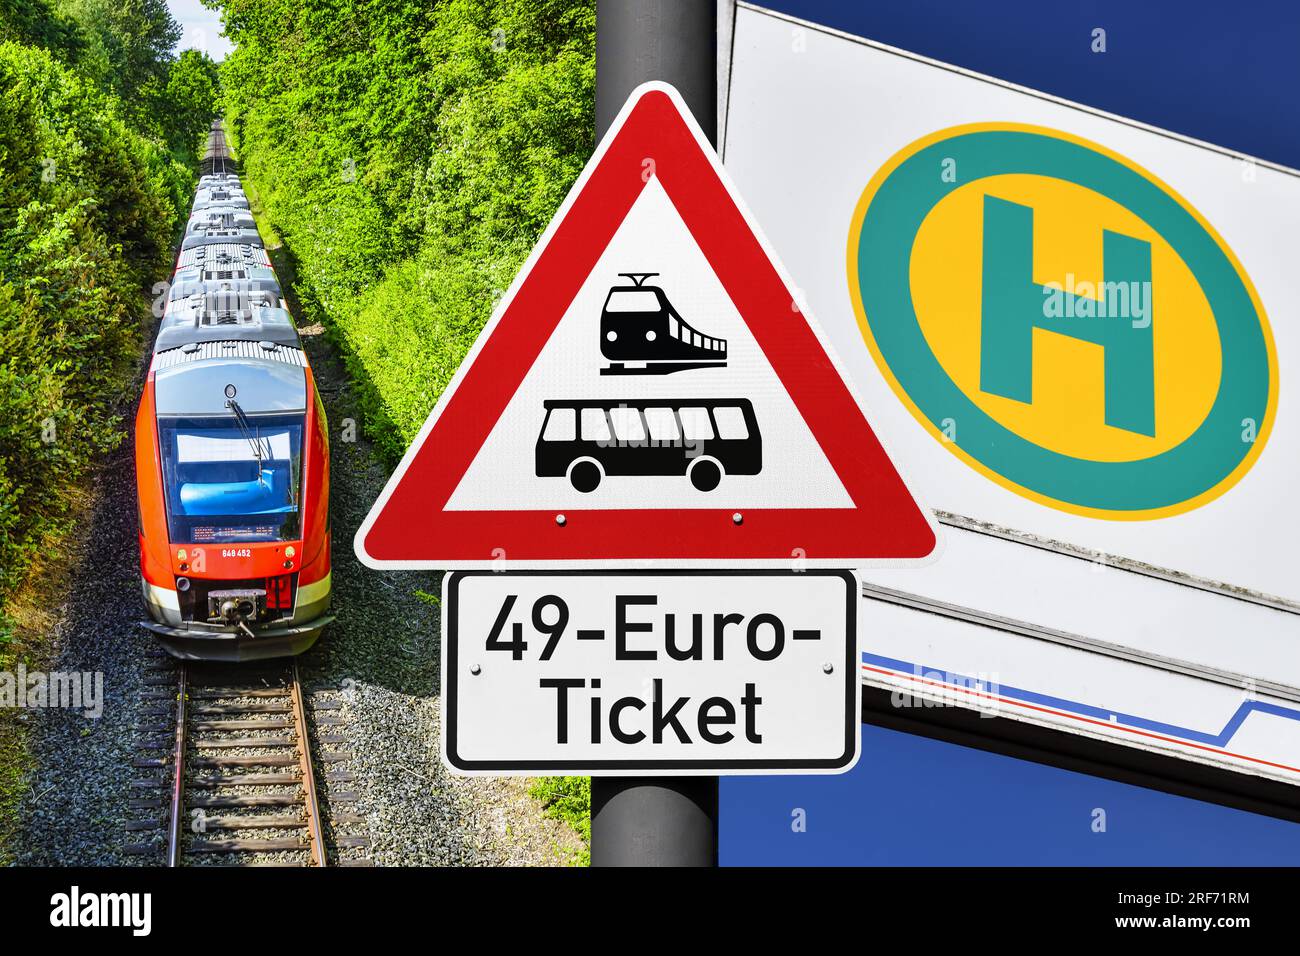 FOTOMONTAGE, Schild mit Aufschrift 49-Euro-Ticket, Regionalbahn und Bushaltestellenschild, 49-Euro-Ticket als möglicher Nachfolger des Neun-Euro-ticke Foto Stock